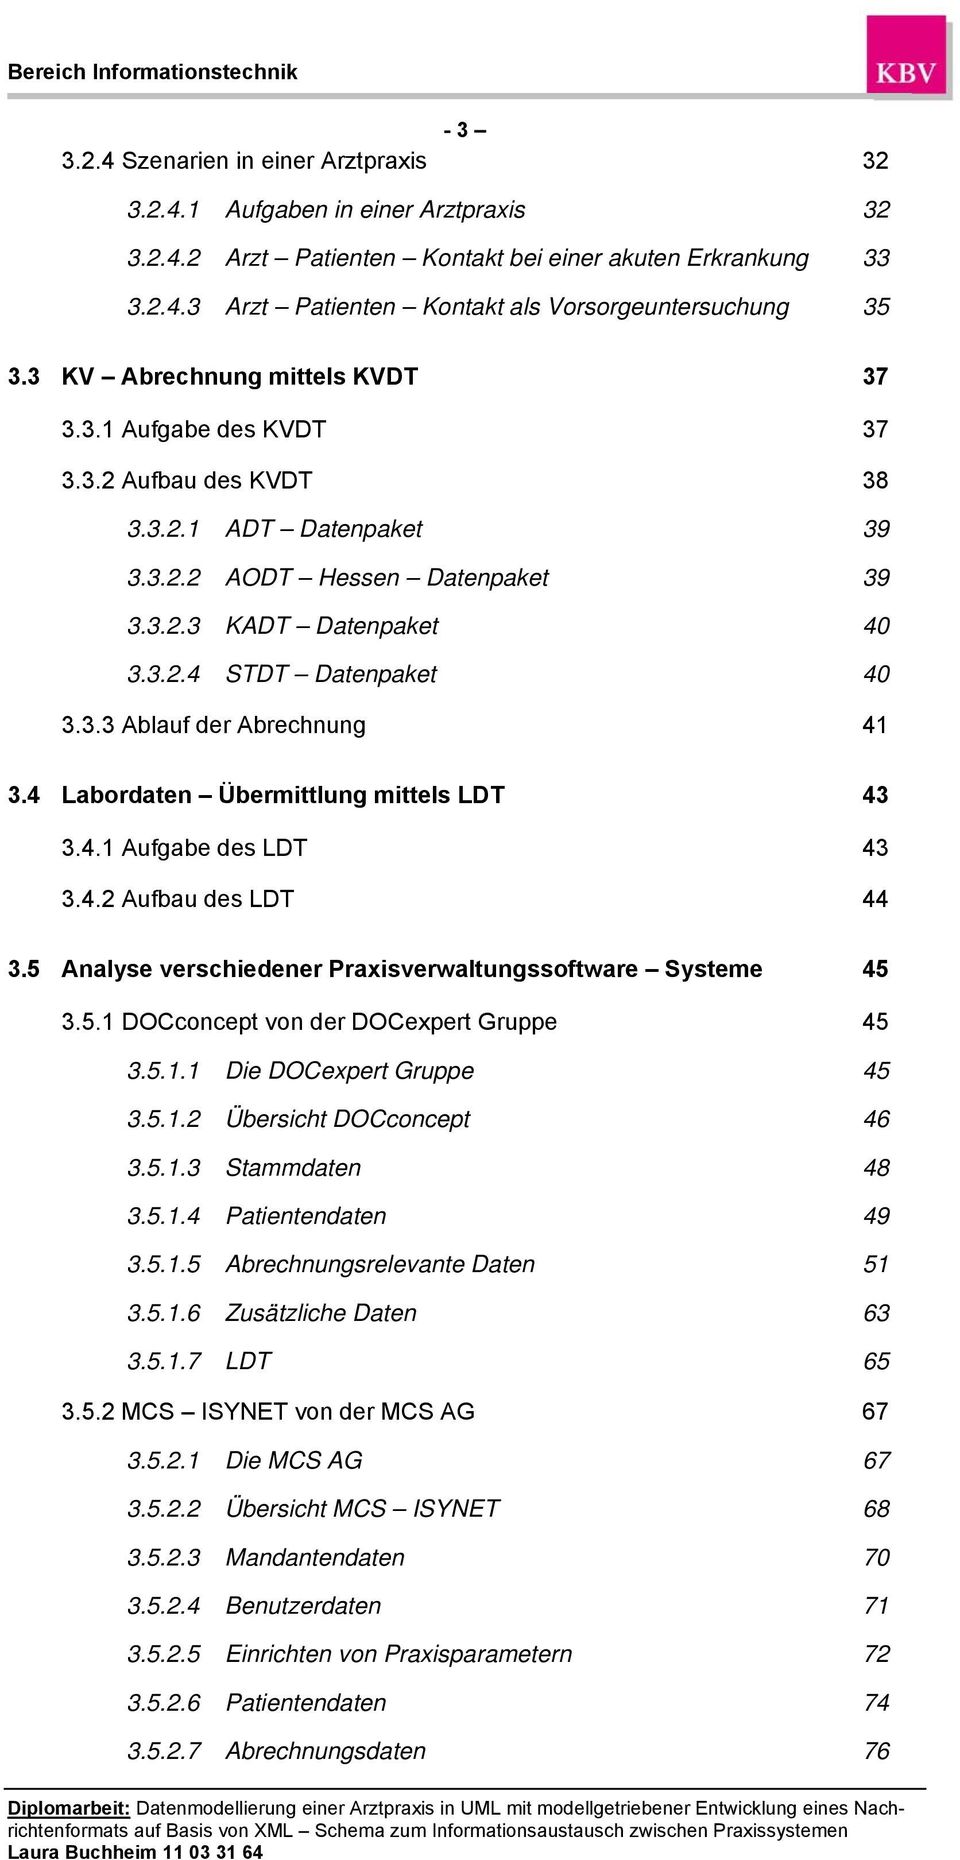 3.3 Ablauf der Abrechnung 41 3.4 Labordaten Übermittlung mittels LDT 43 3.4.1 Aufgabe des LDT 43 3.4.2 Aufbau des LDT 44 3.5 Analyse verschiedener Praxisverwaltungssoftware Systeme 45 3.5.1 DOCconcept von der DOCexpert Gruppe 45 3.